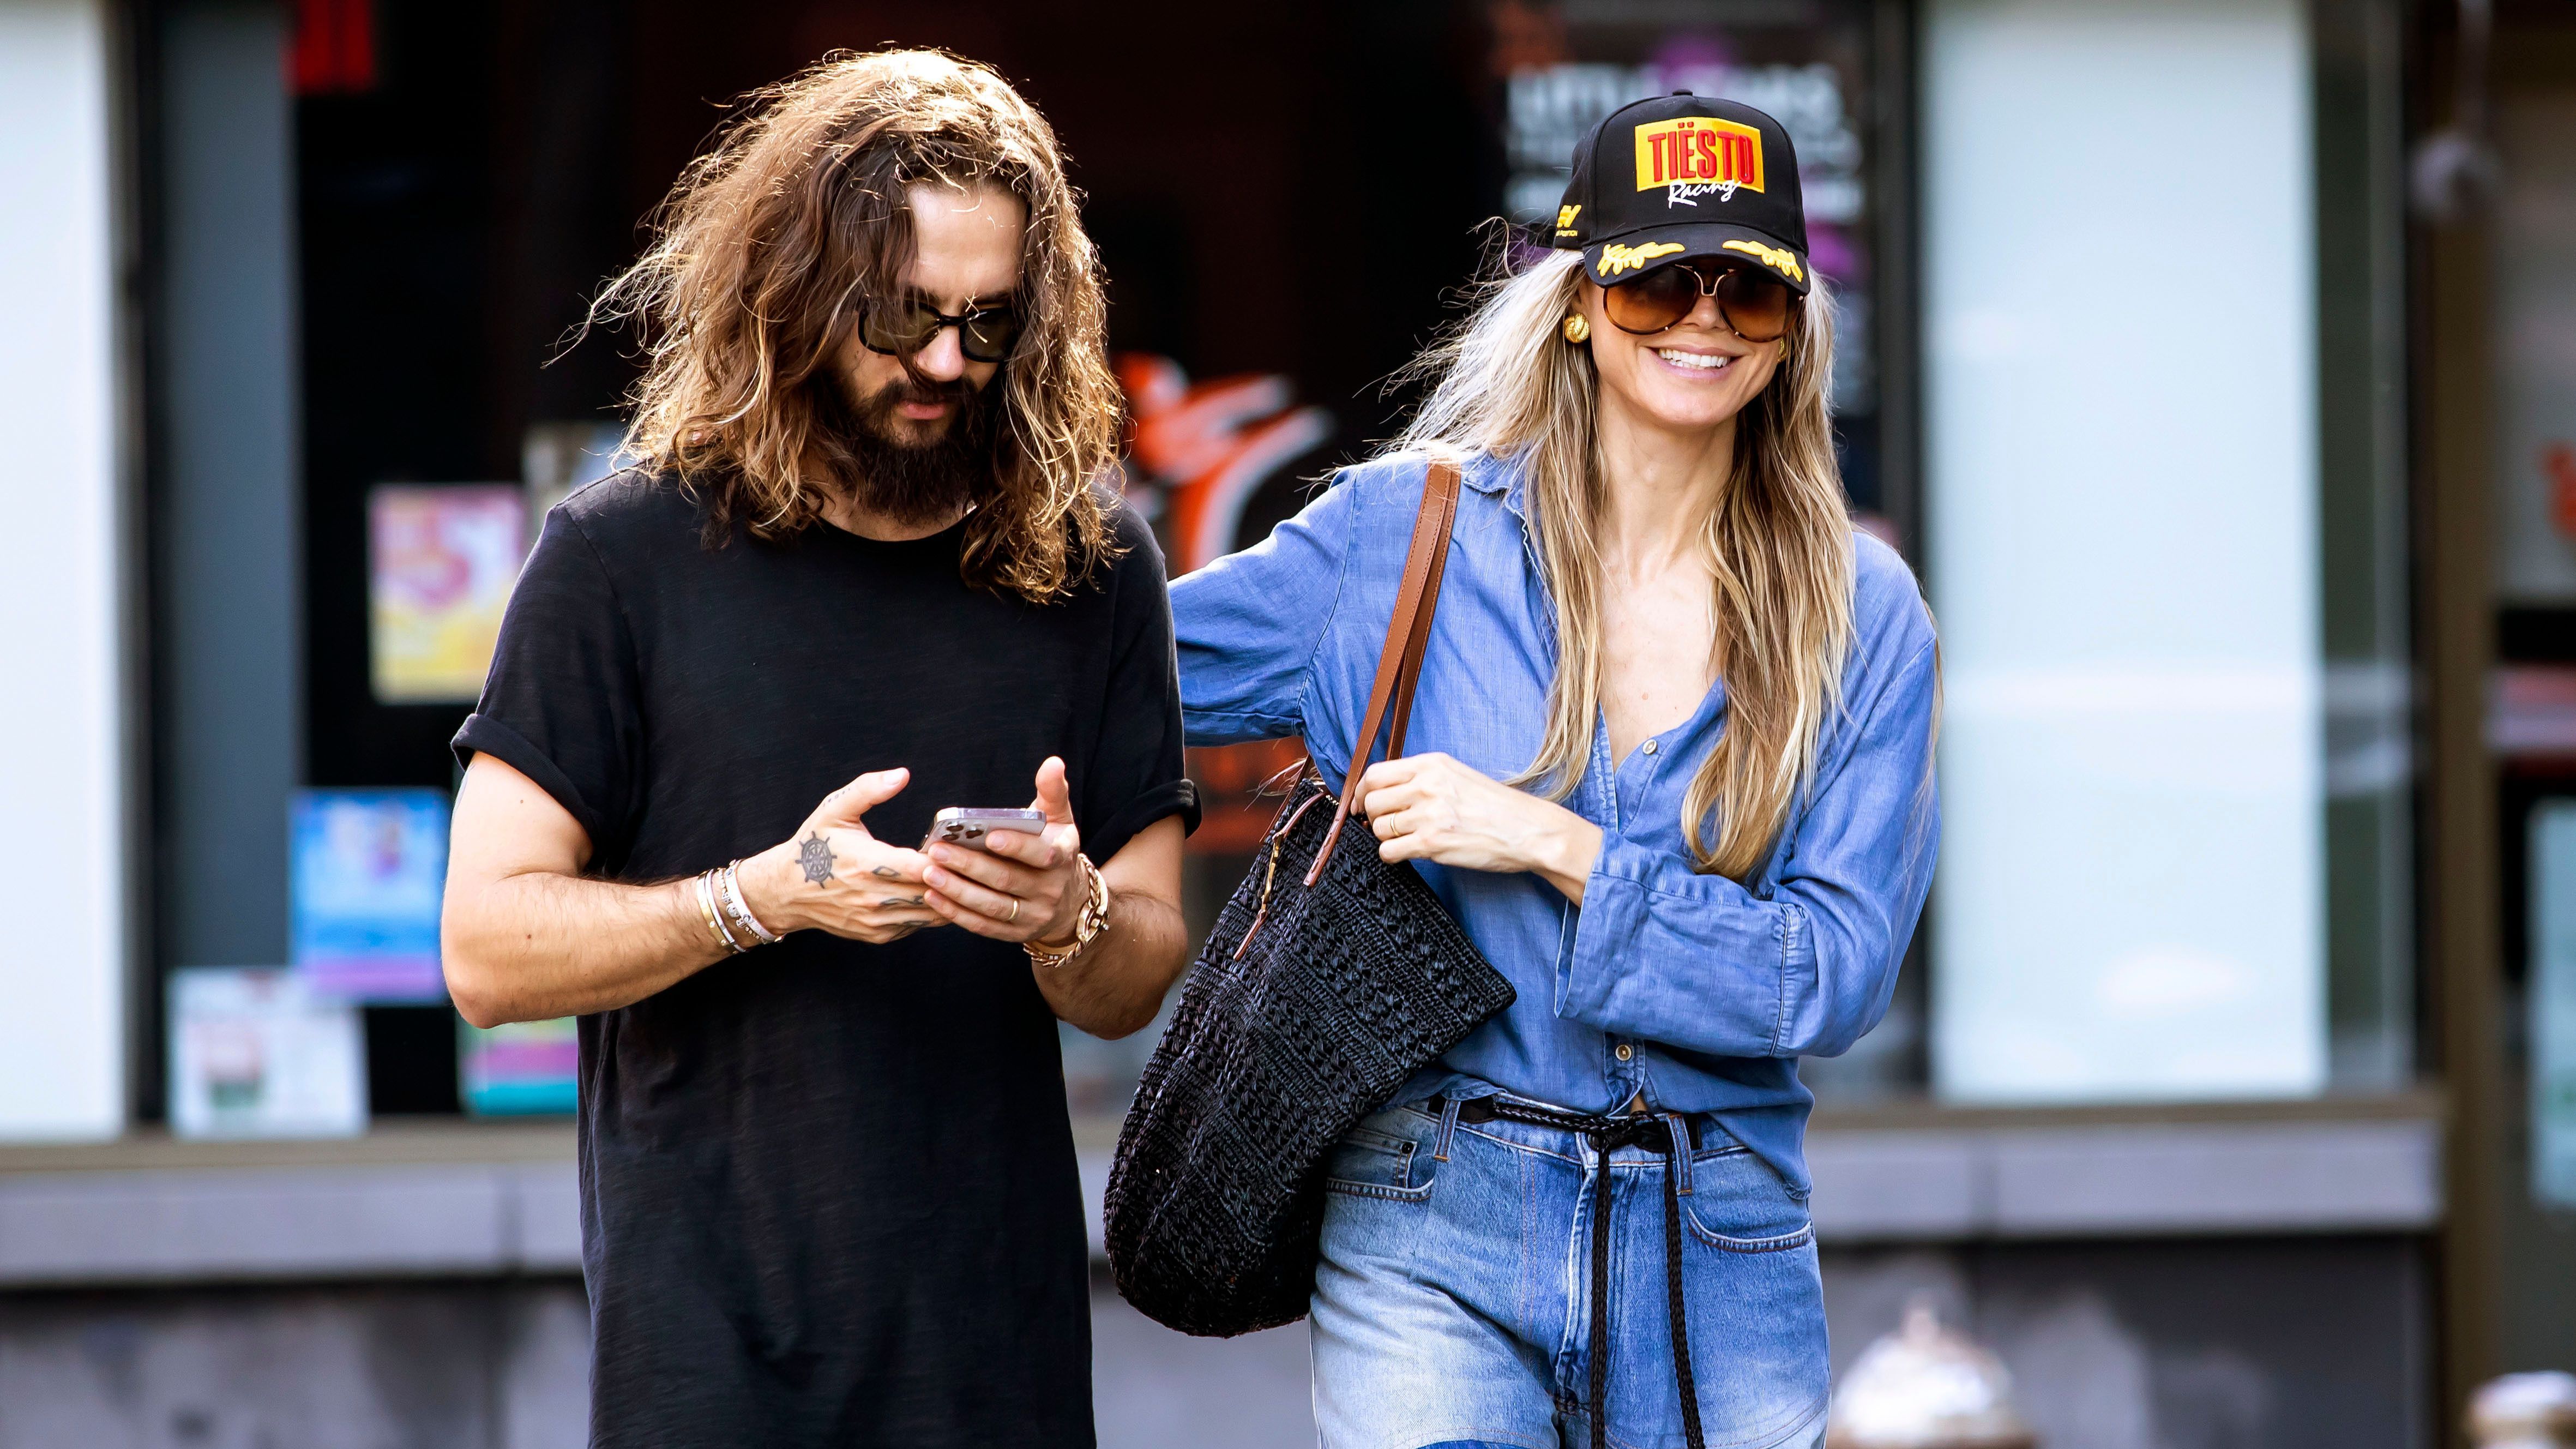 Heidi im angesagten Denim Outfit unterwegs mit Ehemann Tom Kaulitz.